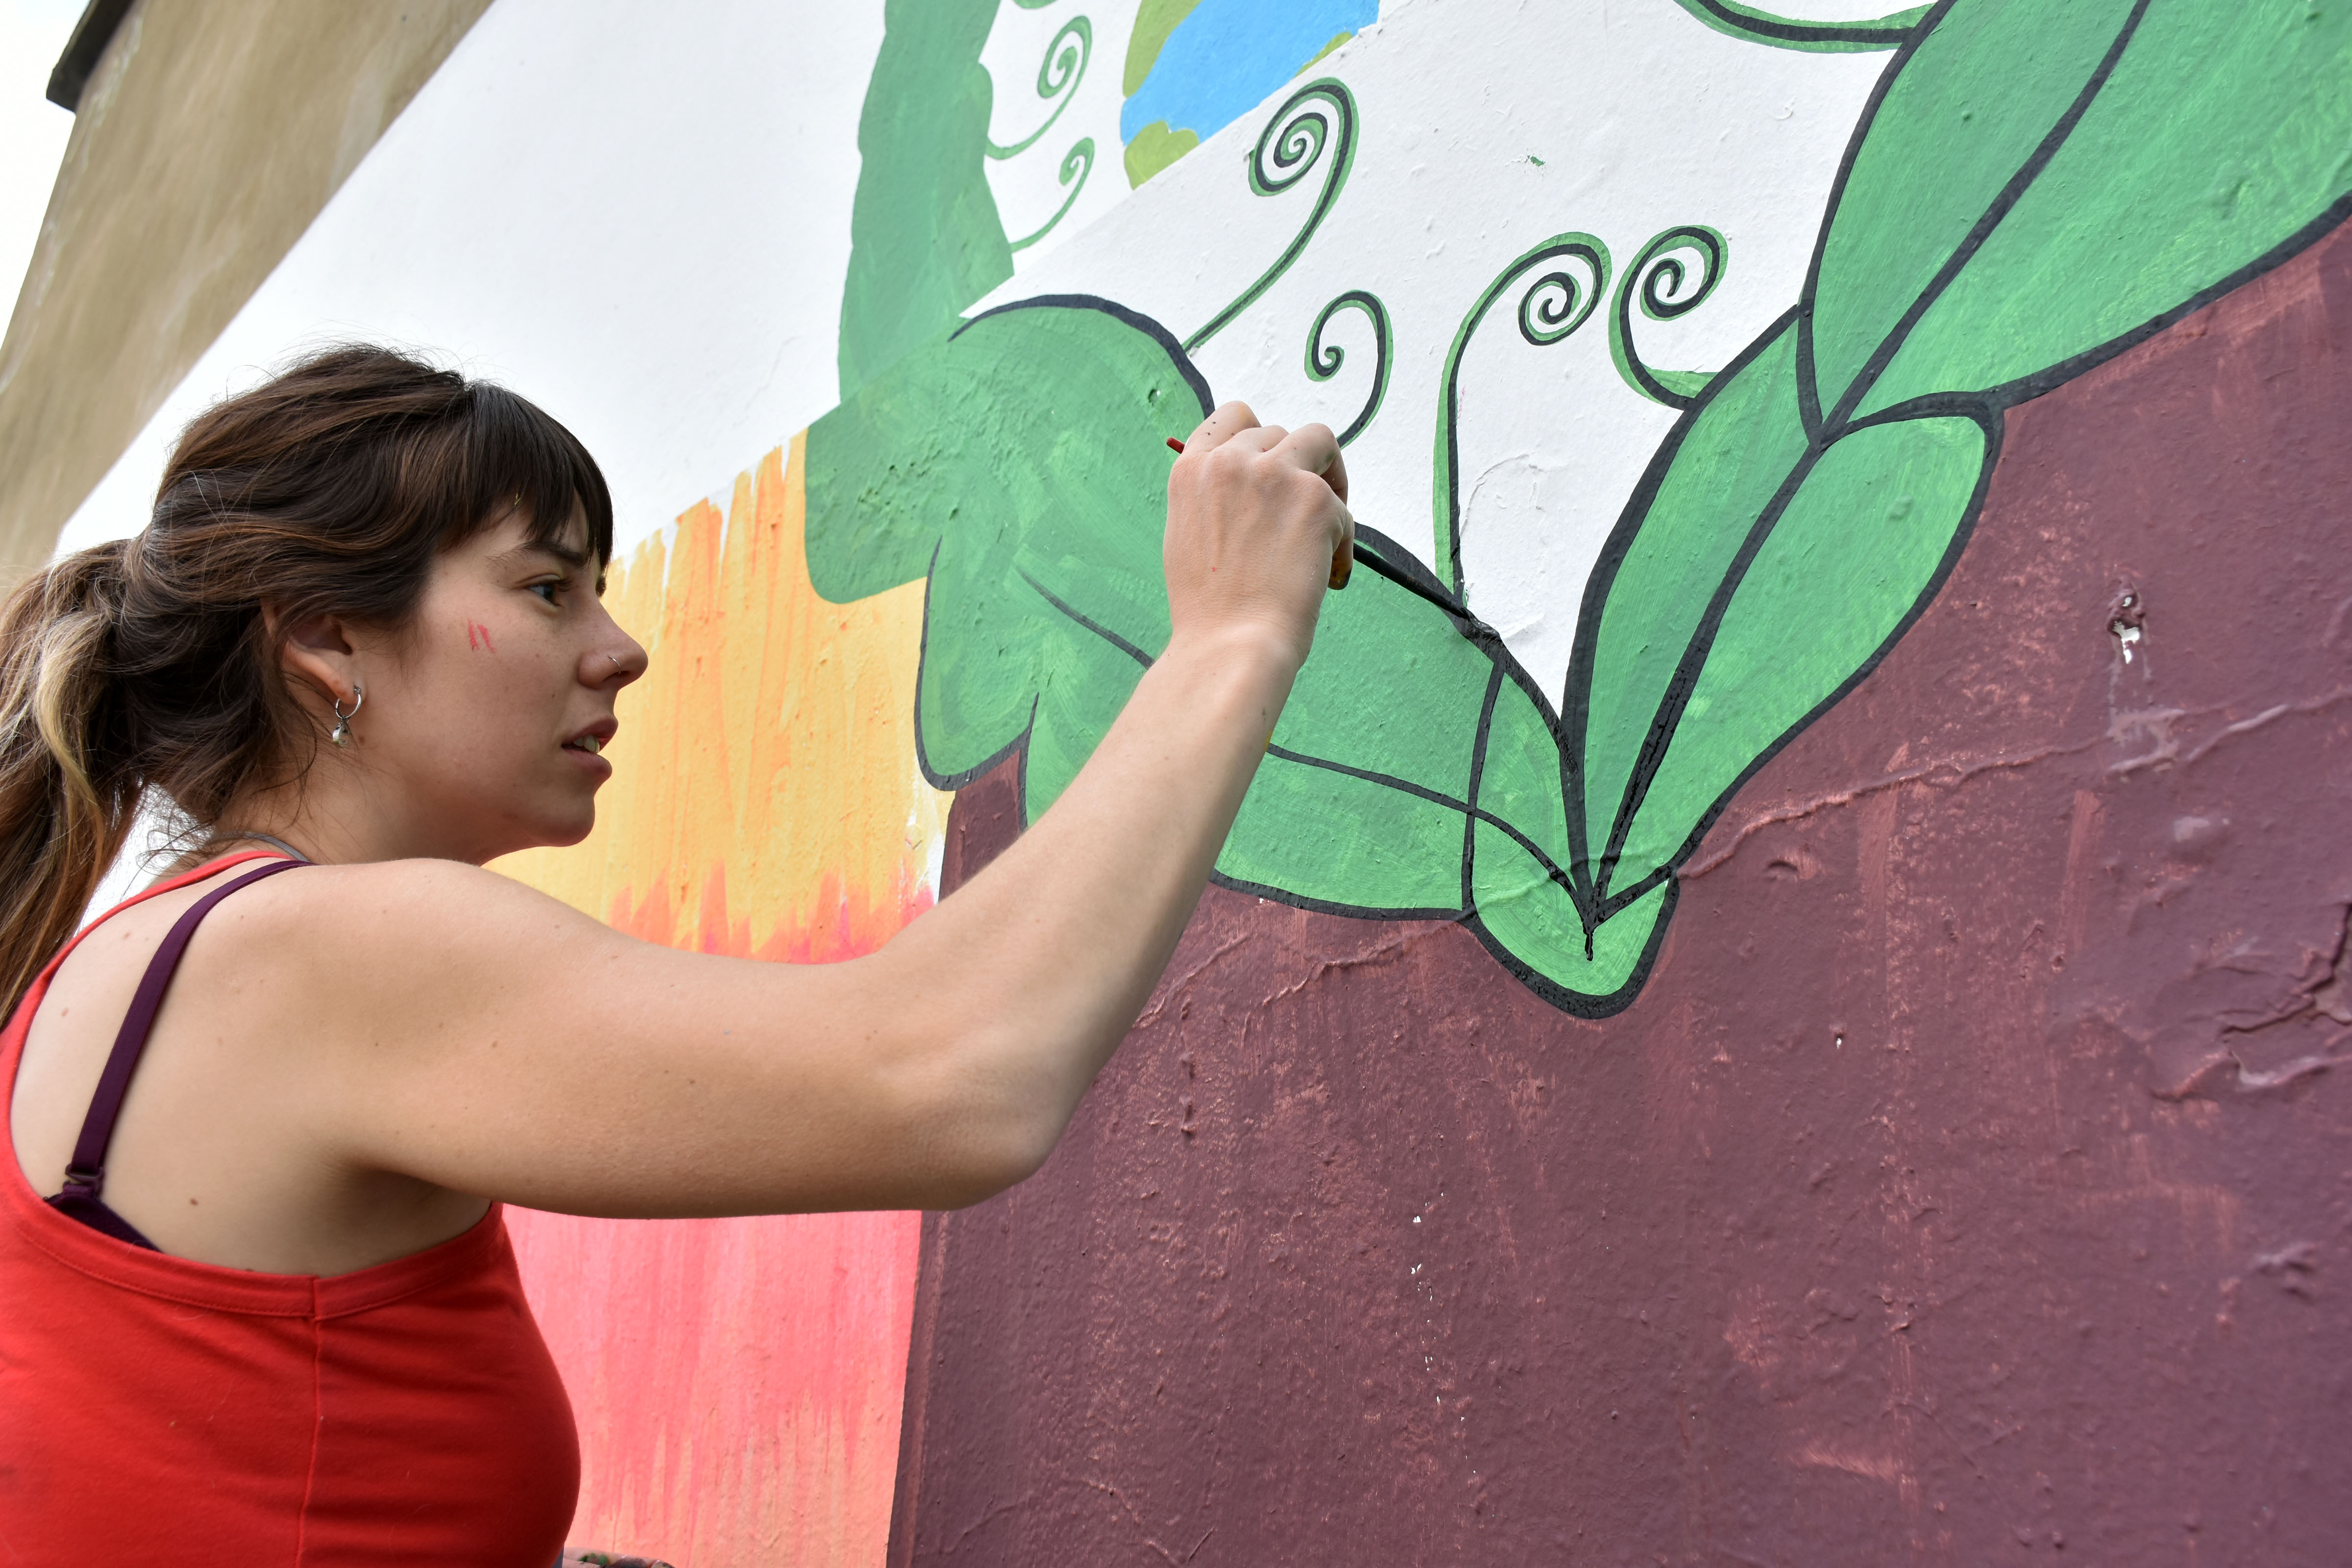 La muralista Yamila Gómez, más conocida como la Chini, se encargó de llevar la obra a una pared de siete metros de ancho por cuatro de alto. Lo hizo con mucha emoción porque se sintió identificada con el mensaje. Podría haber sido ella de niña. Priscila está contenta con la versión de la artista porque los colores eran similares a los suyos.